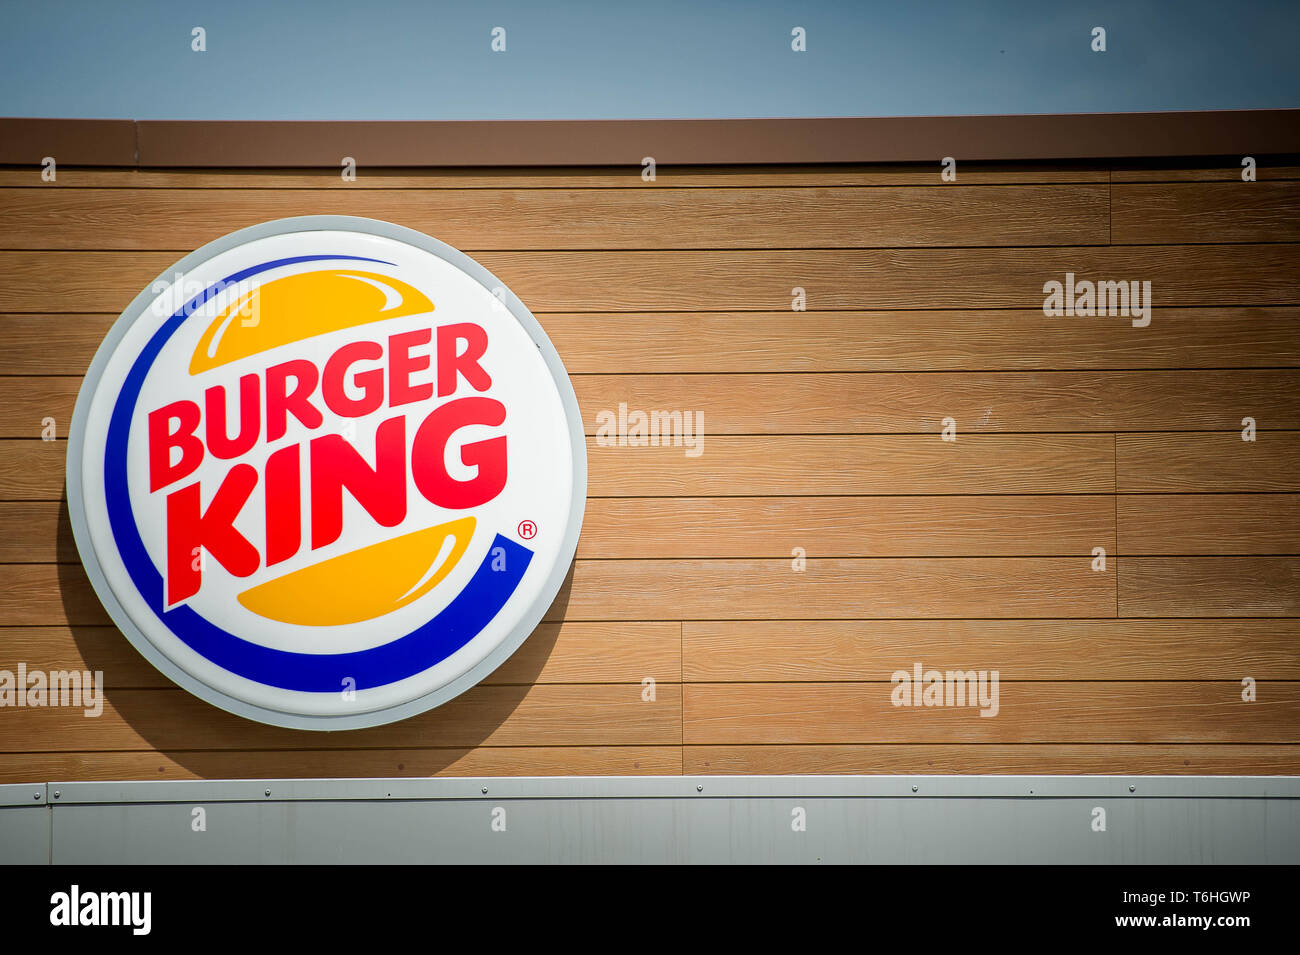 Burger King Signage and Logo Stock Photo